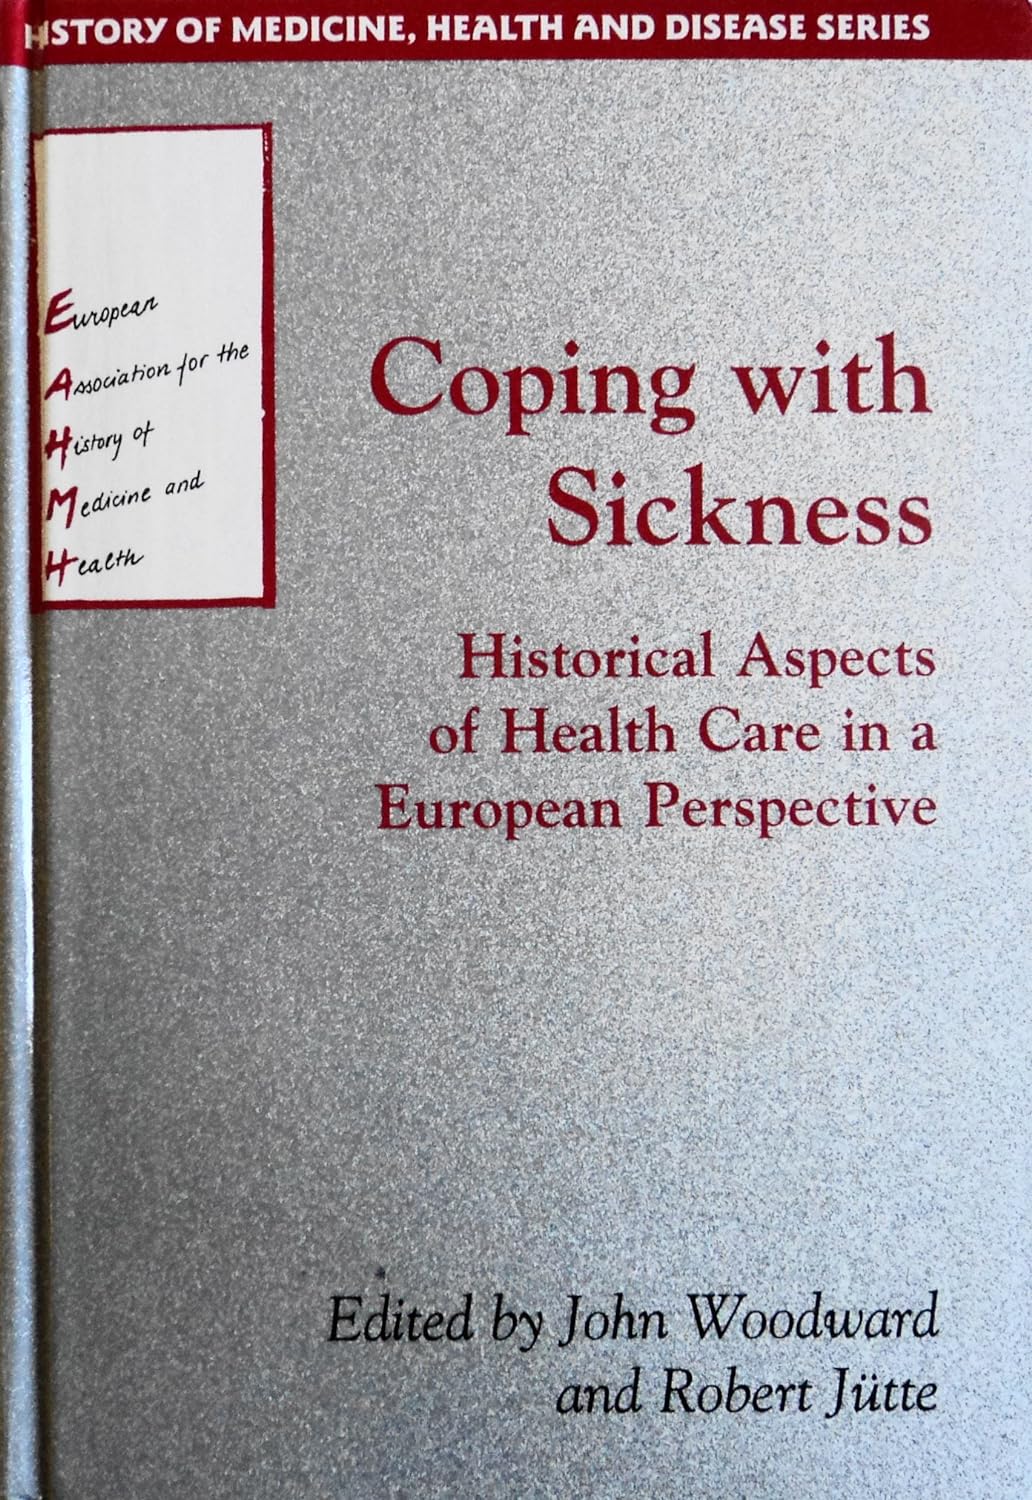 Imagen de portada del libro Coping with sickness